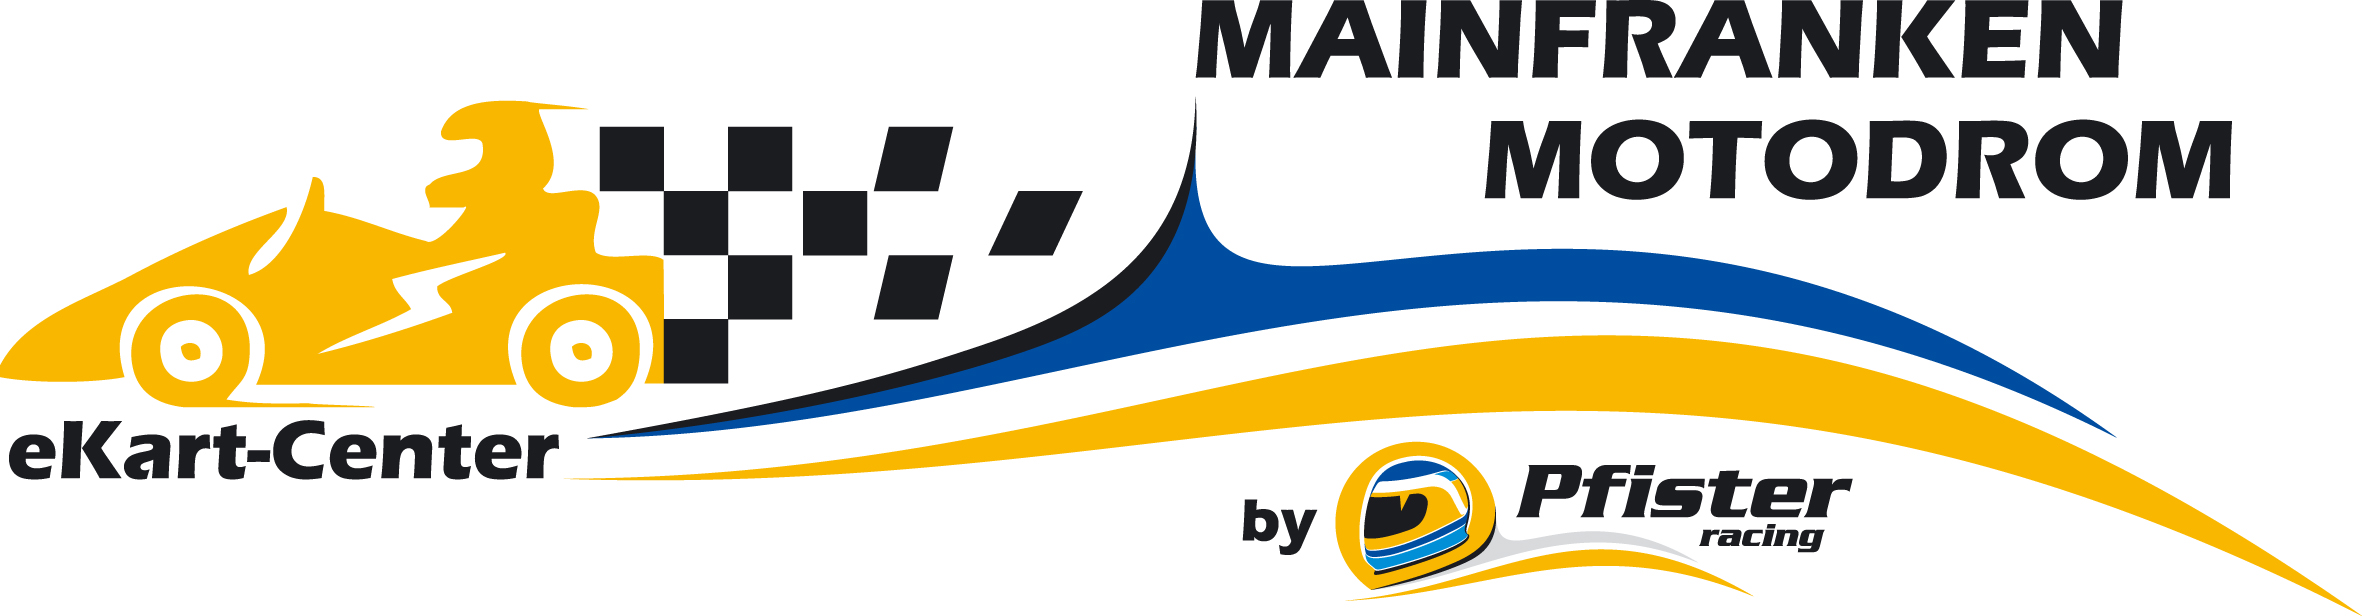 Logo Mainfranken Motodrom